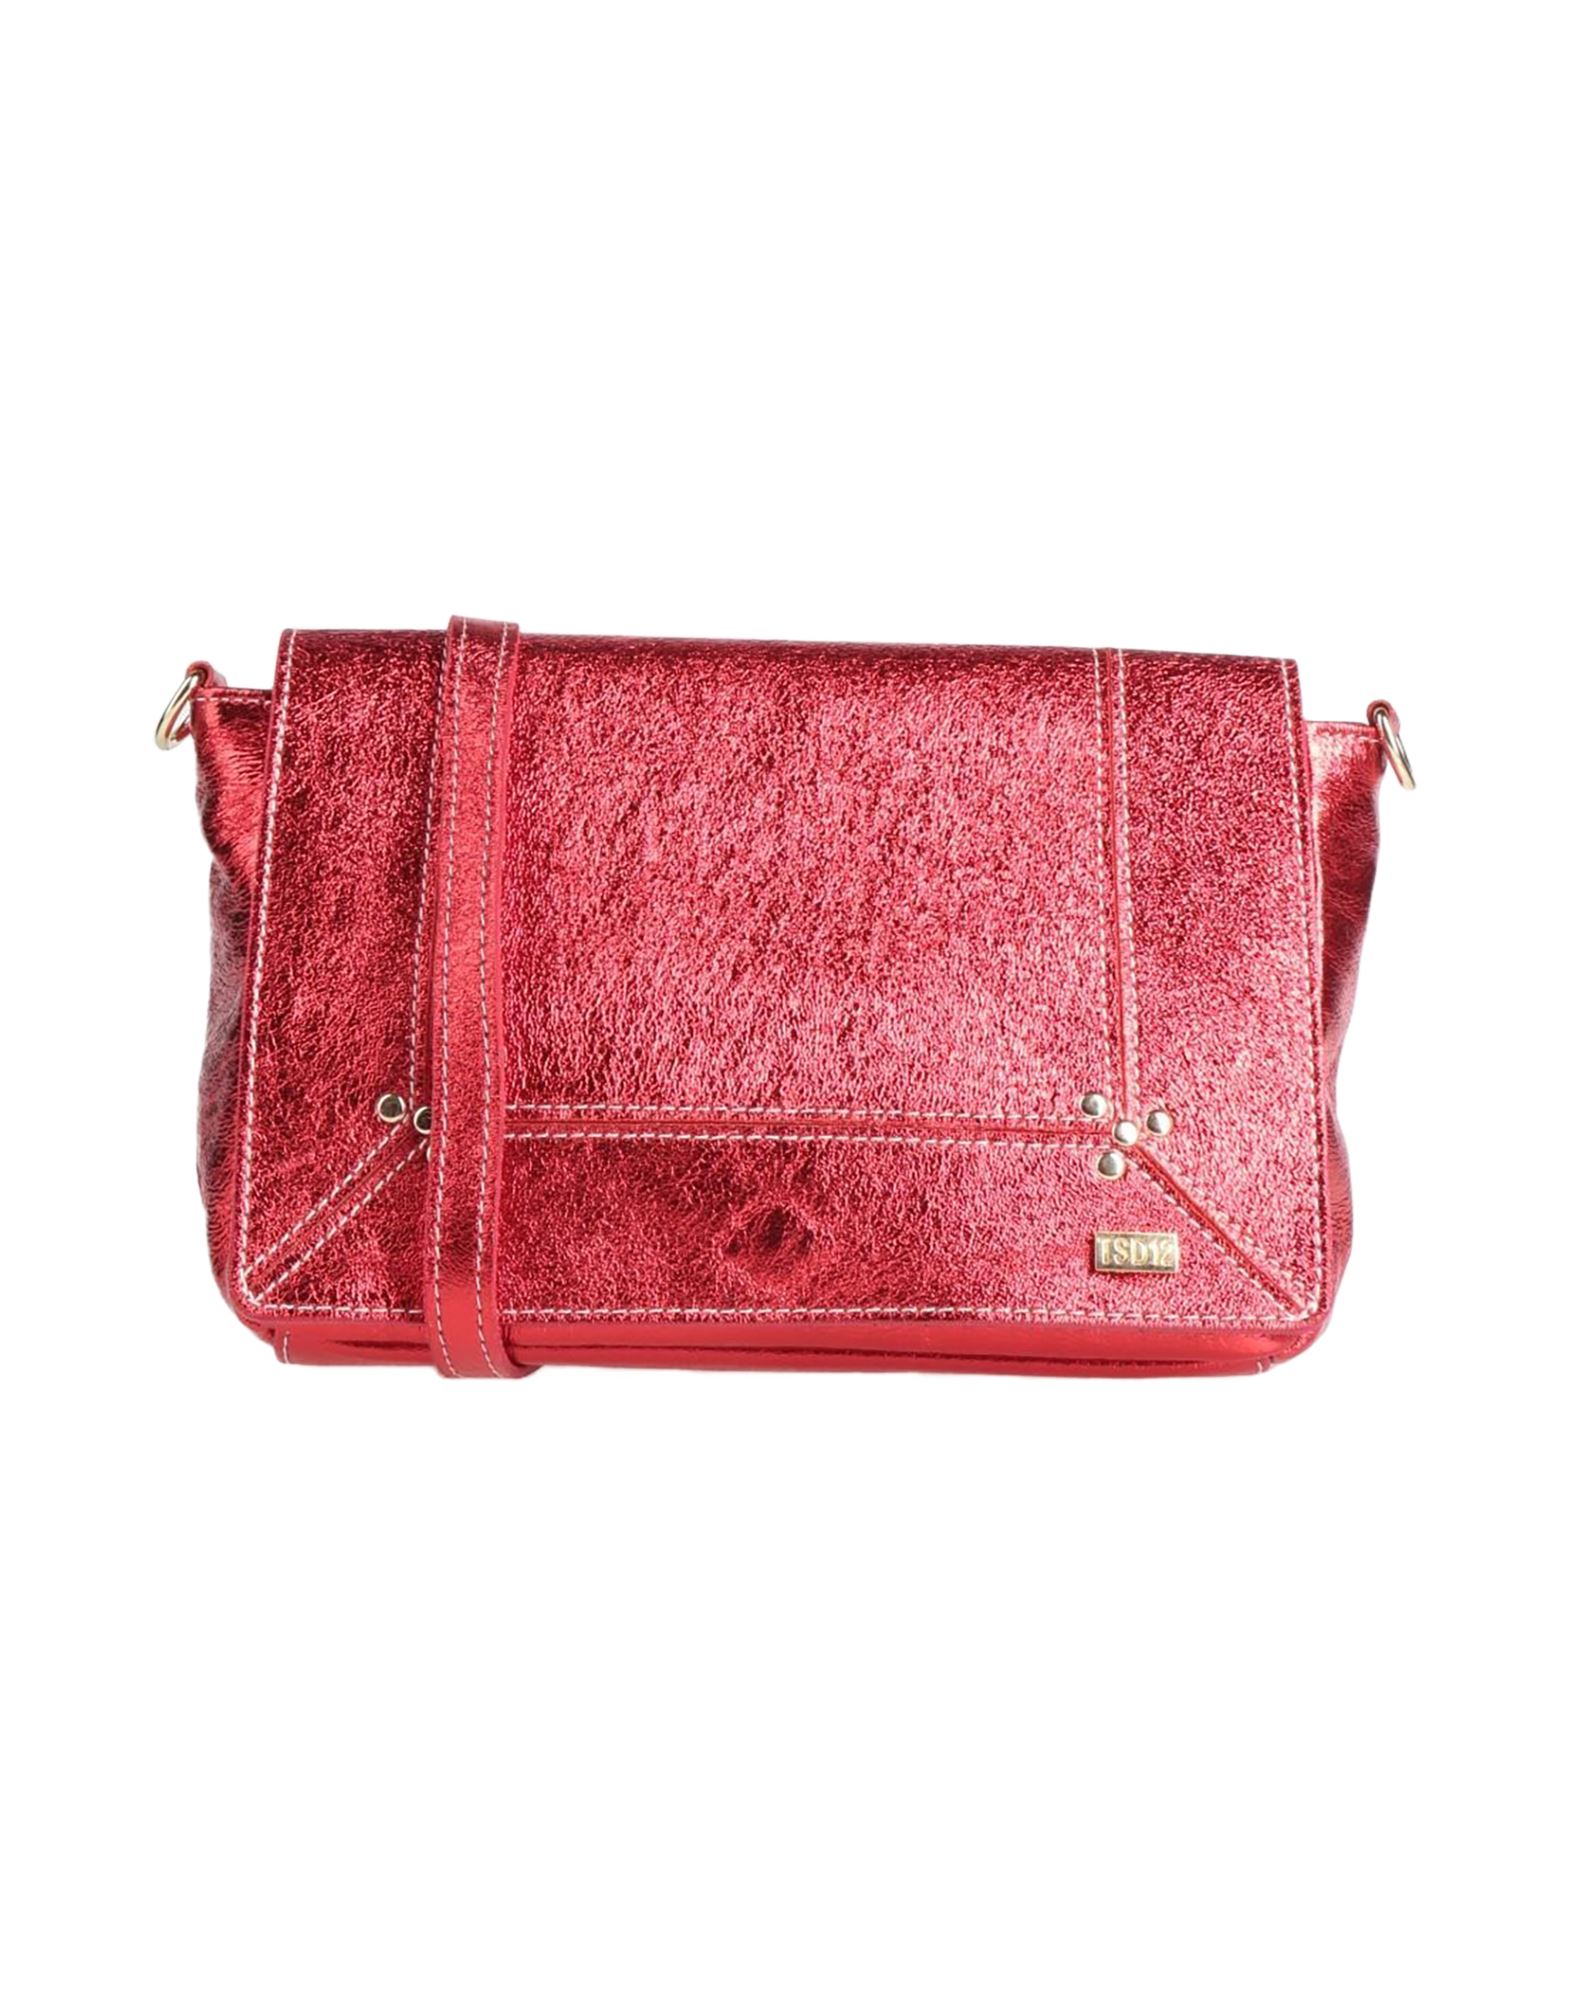 Tsd12 Handbags In Red